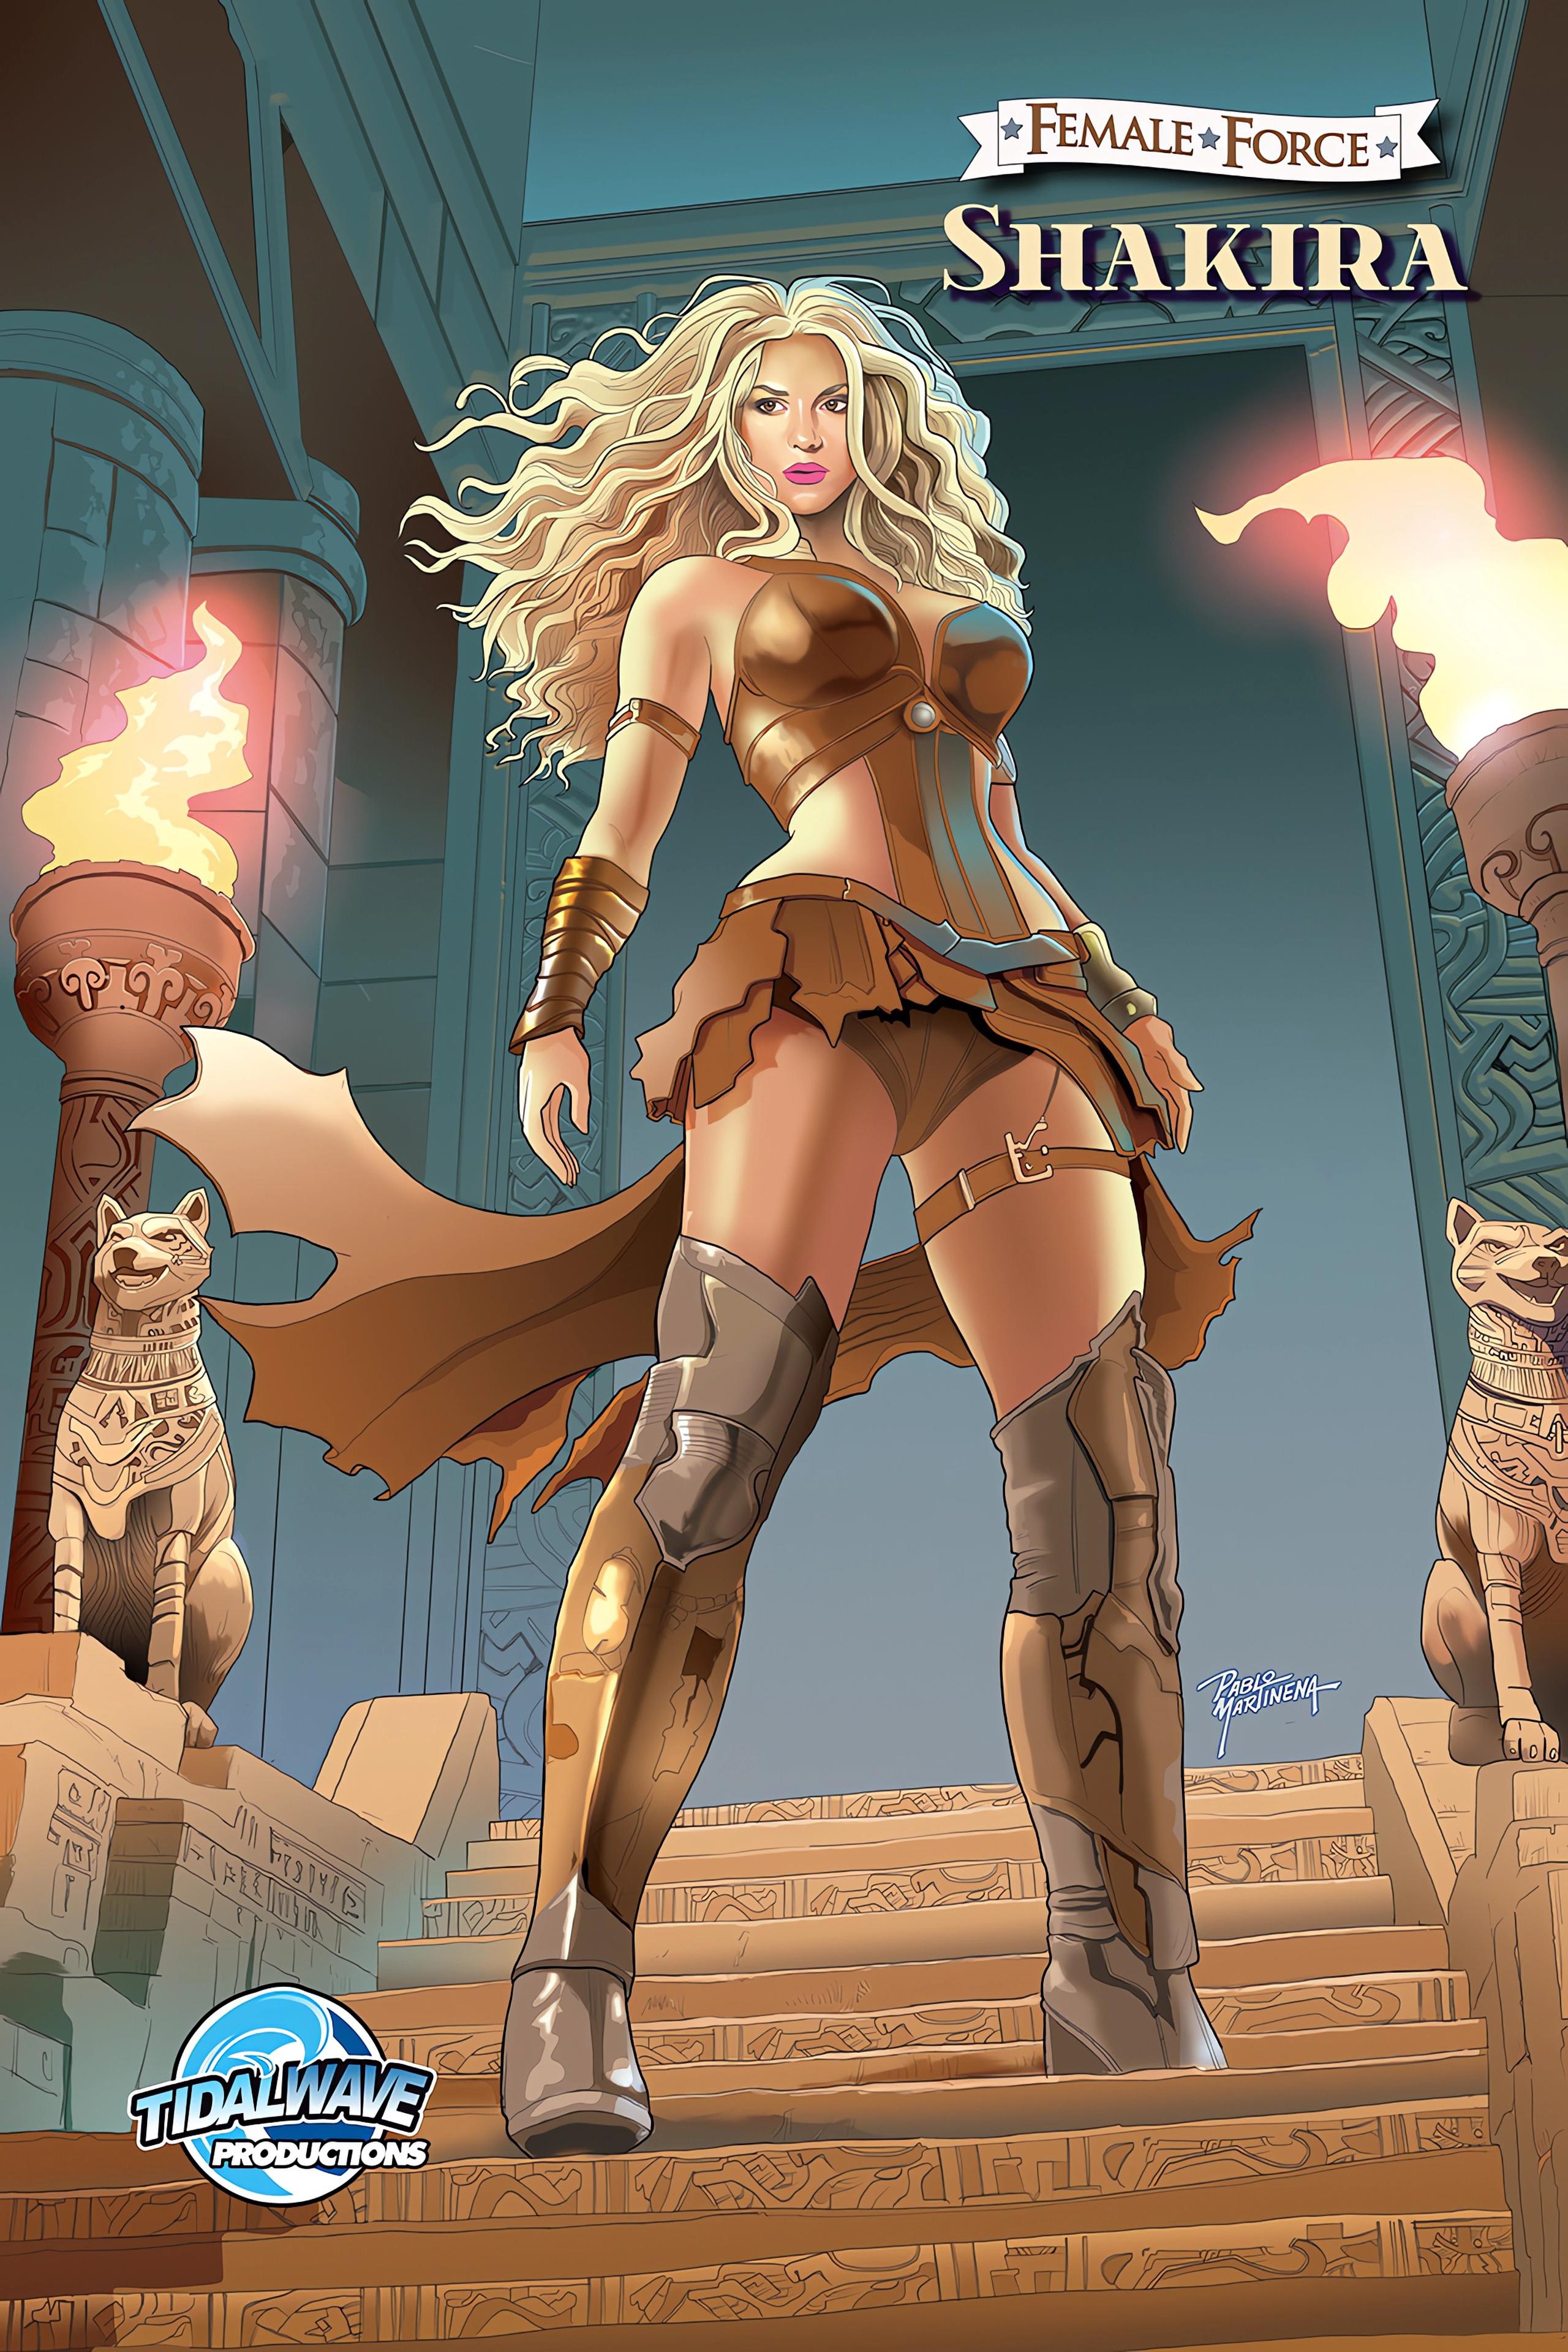 Fotografía cedida por TidalWave Productions donde se muestra la portada del cómic dedicado a la cantante colombiana Shakira.